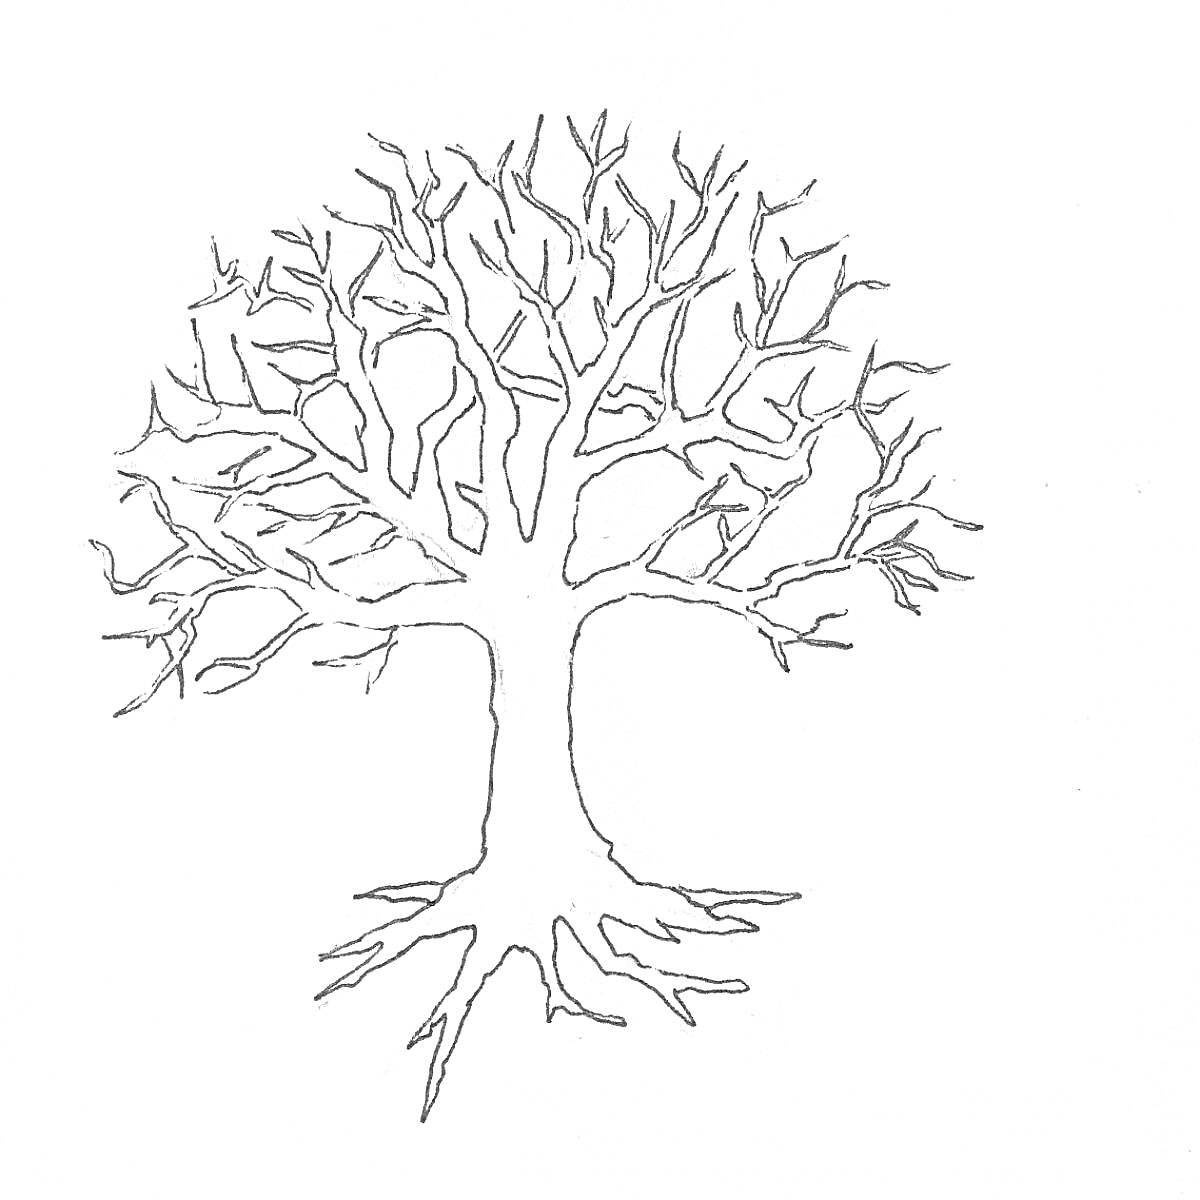 Дерево без листьев с ветвями и корнями, контурное изображение